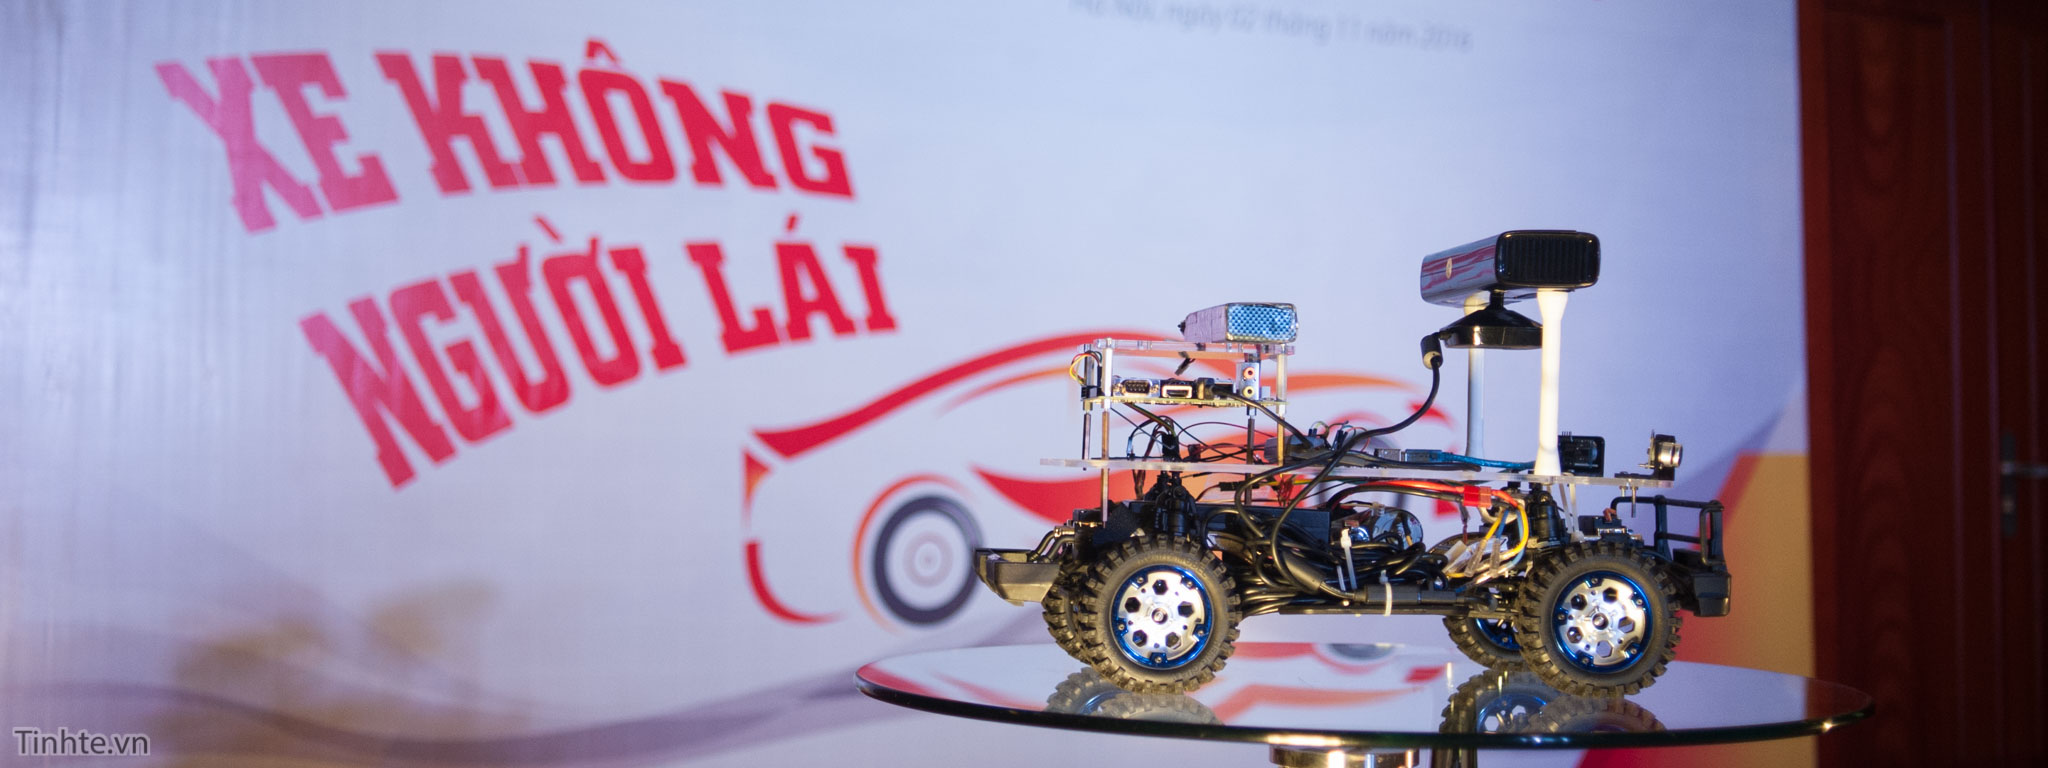 FPT là công ty đầu tiên ra mắt công nghệ xe điện tự lái tại Việt Nam